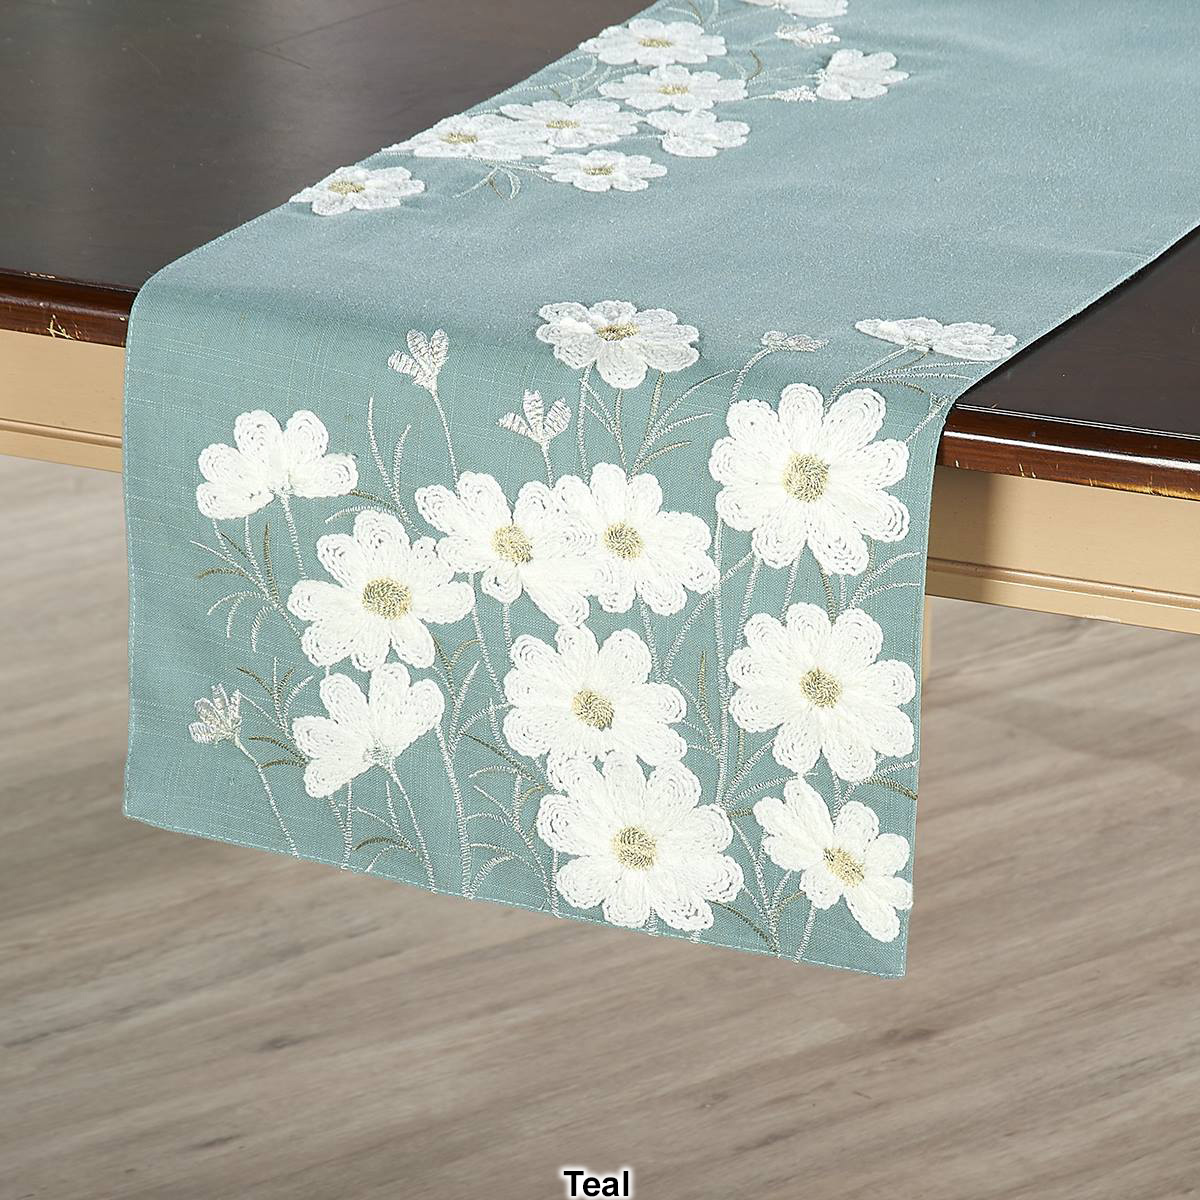 Crochet Floral Table Runner - 14x72